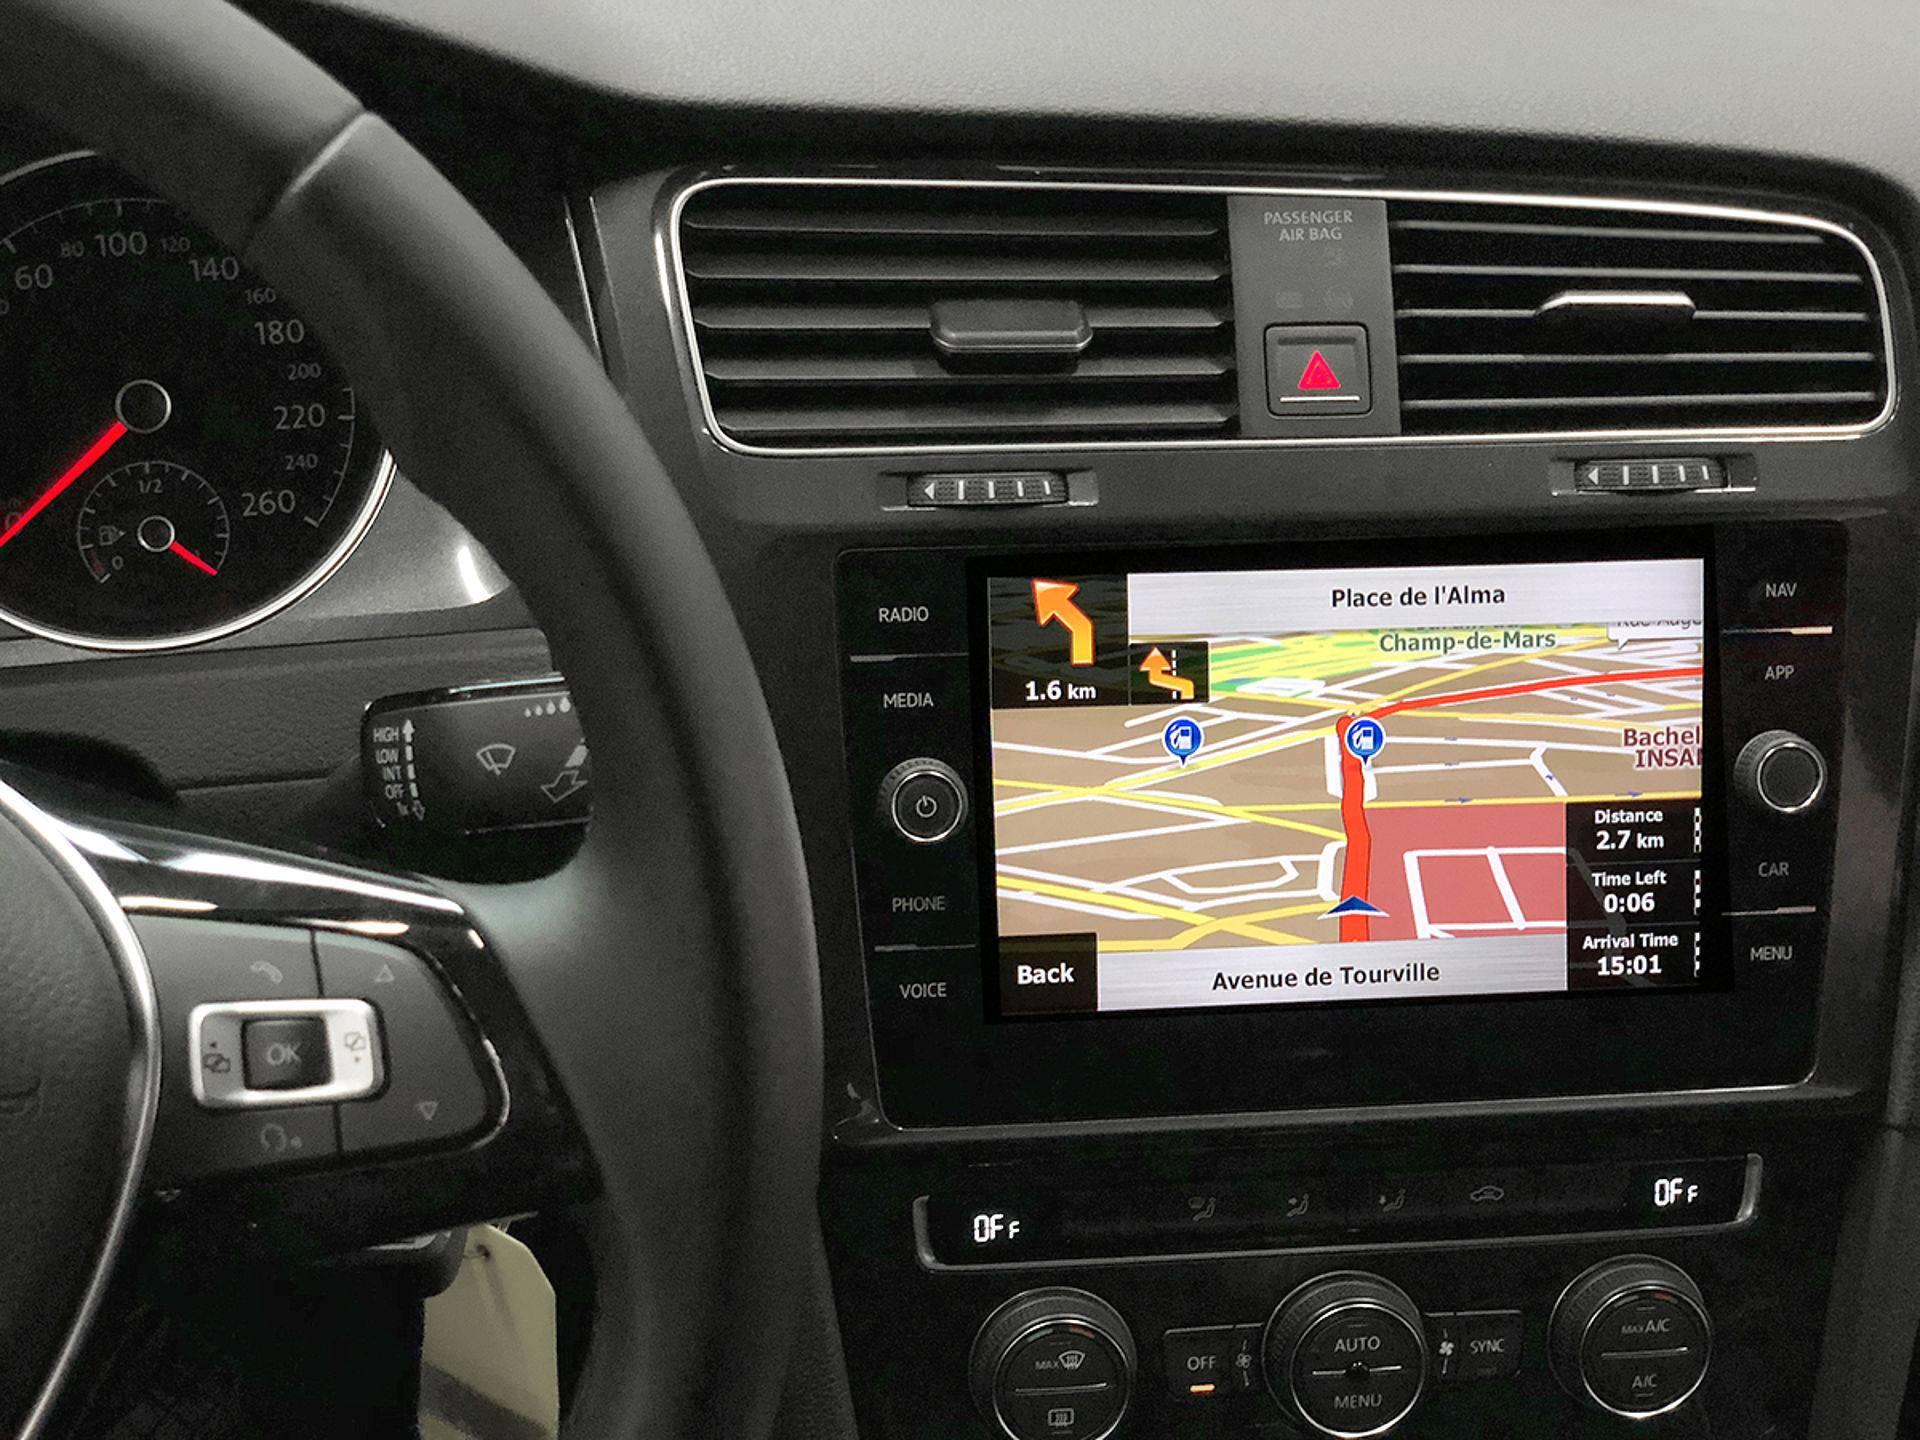 VW Volkswagen Seat Skoda MIB navigatie integratie (AVIC